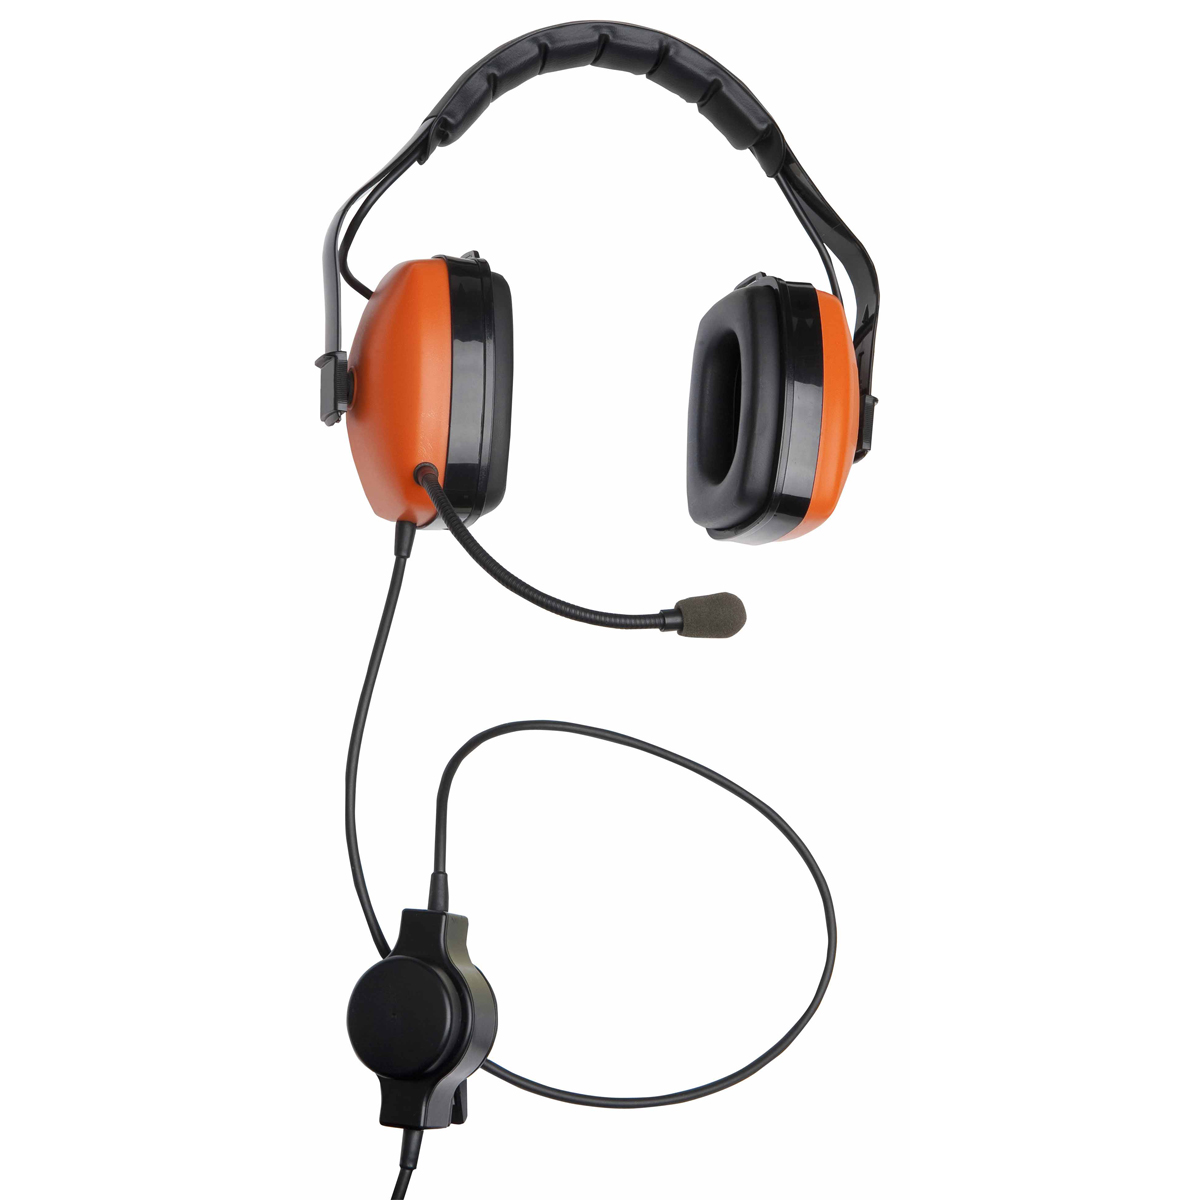 Headset für Ex-Zonen 1 und 2, ermöglicht den Einsatz im lauten Umfeld